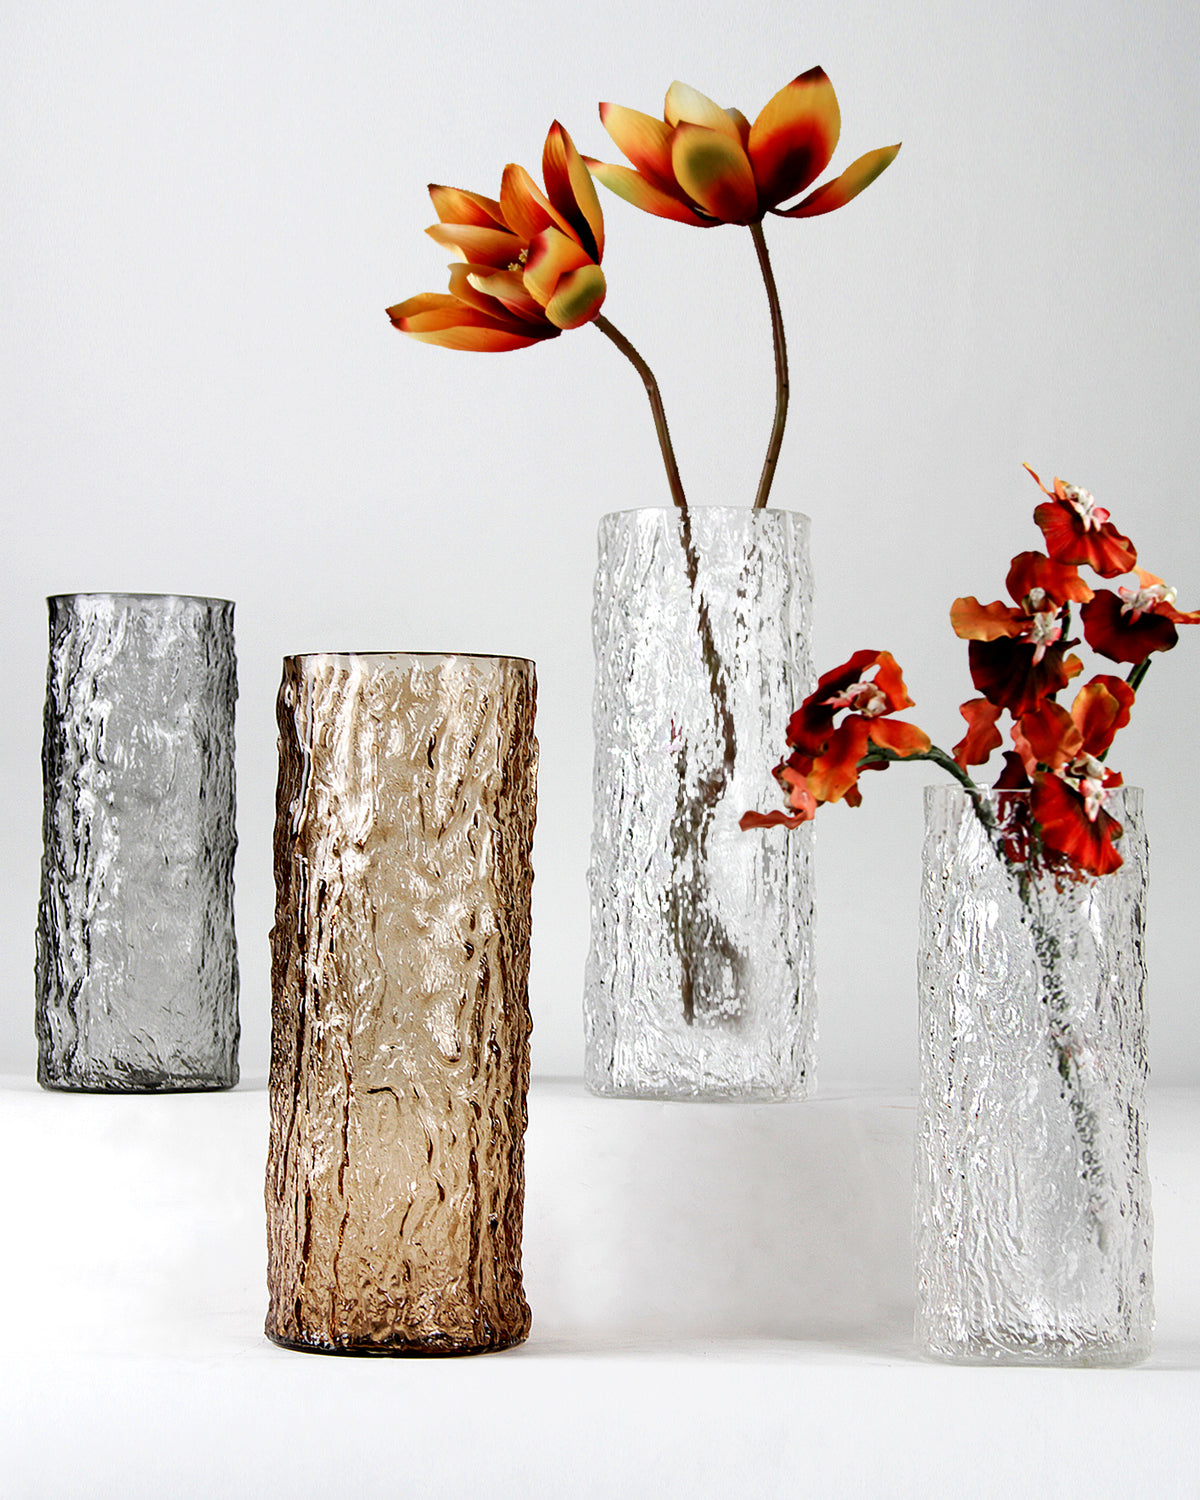 Glacier Glass Vase